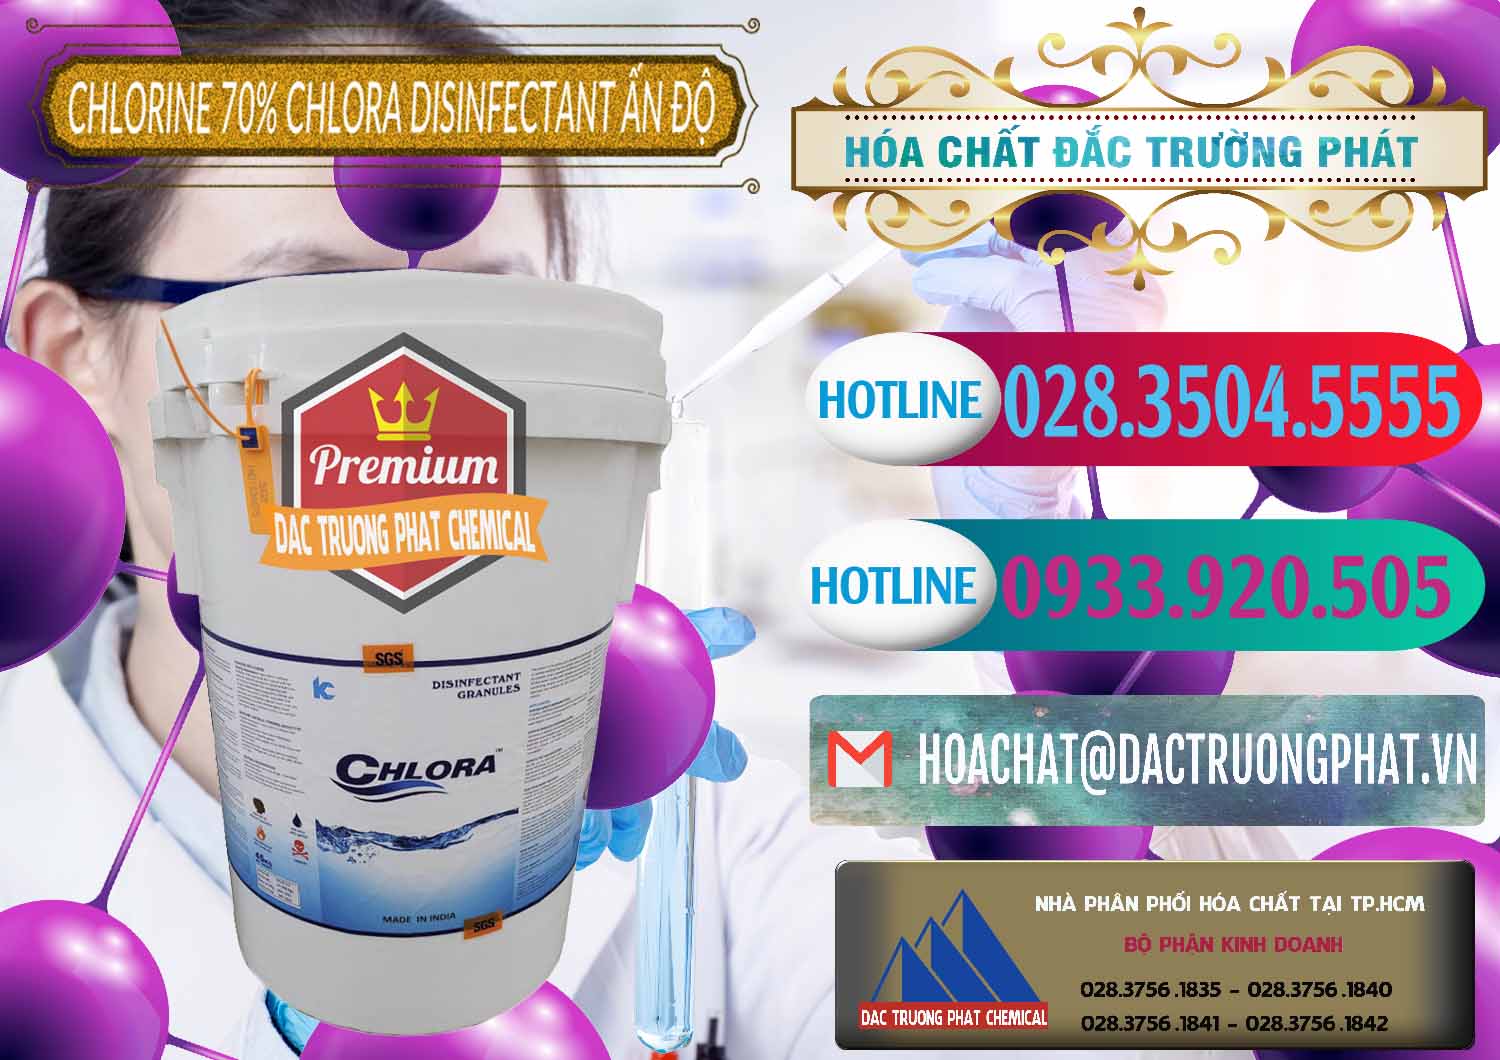 Đơn vị chuyên kinh doanh & bán Chlorine – Clorin 70% Chlora Disinfectant Ấn Độ India - 0213 - Đơn vị cung cấp ( phân phối ) hóa chất tại TP.HCM - truongphat.vn